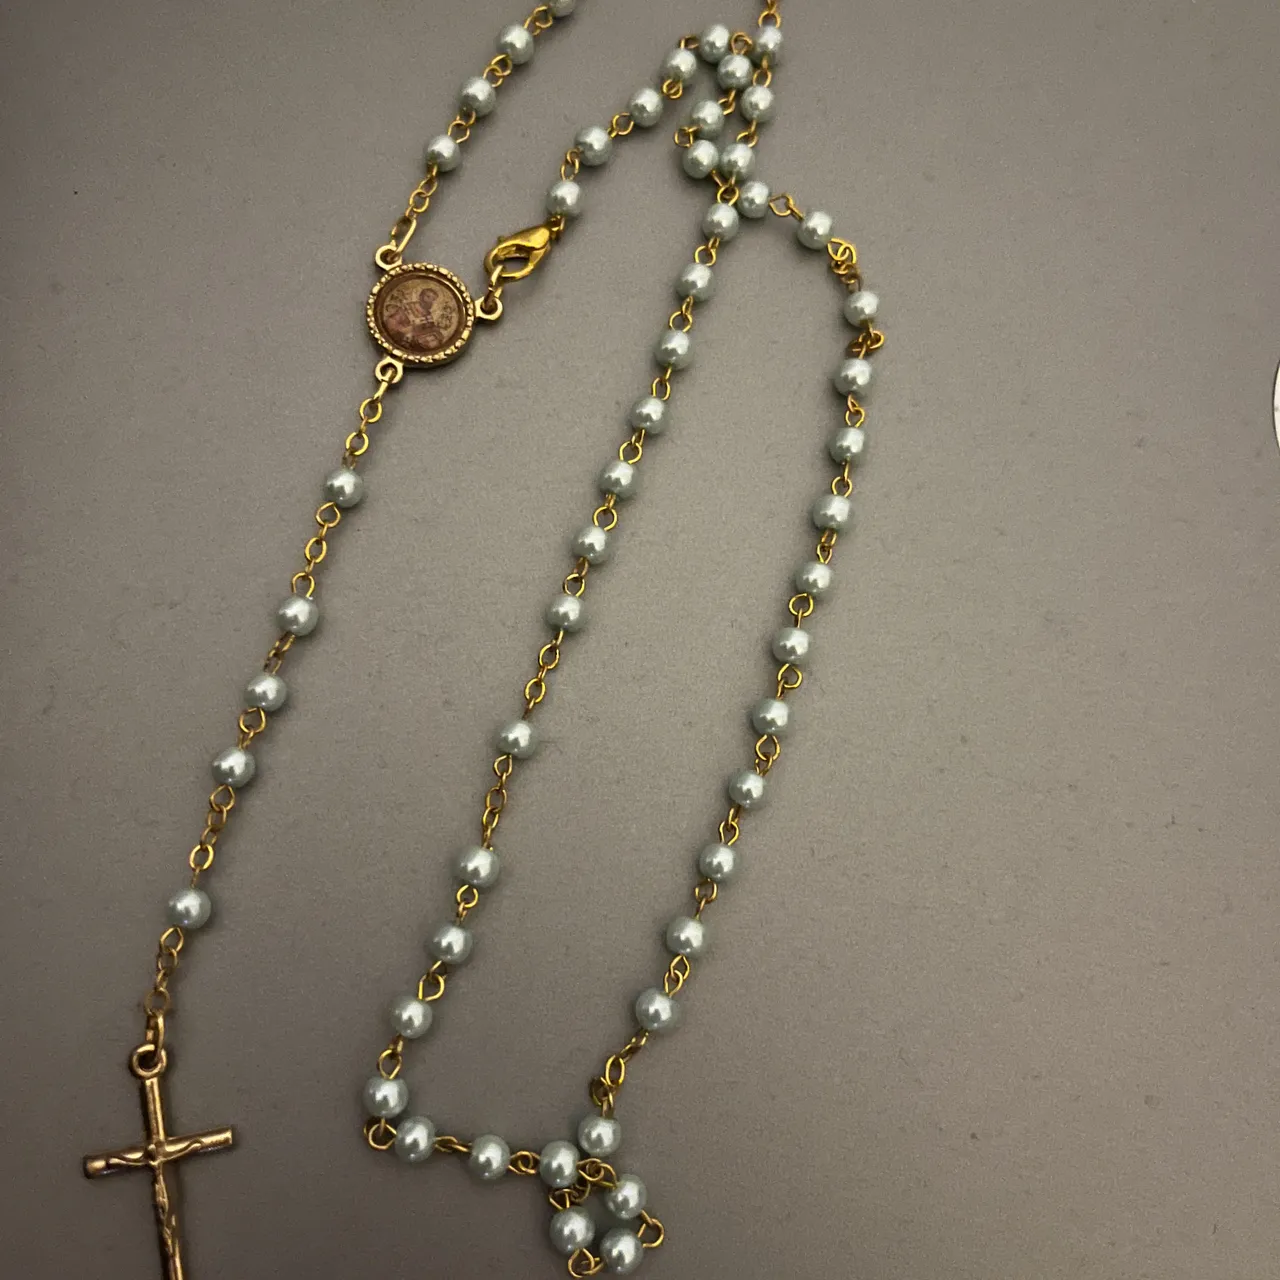 New baby rosary photo 1